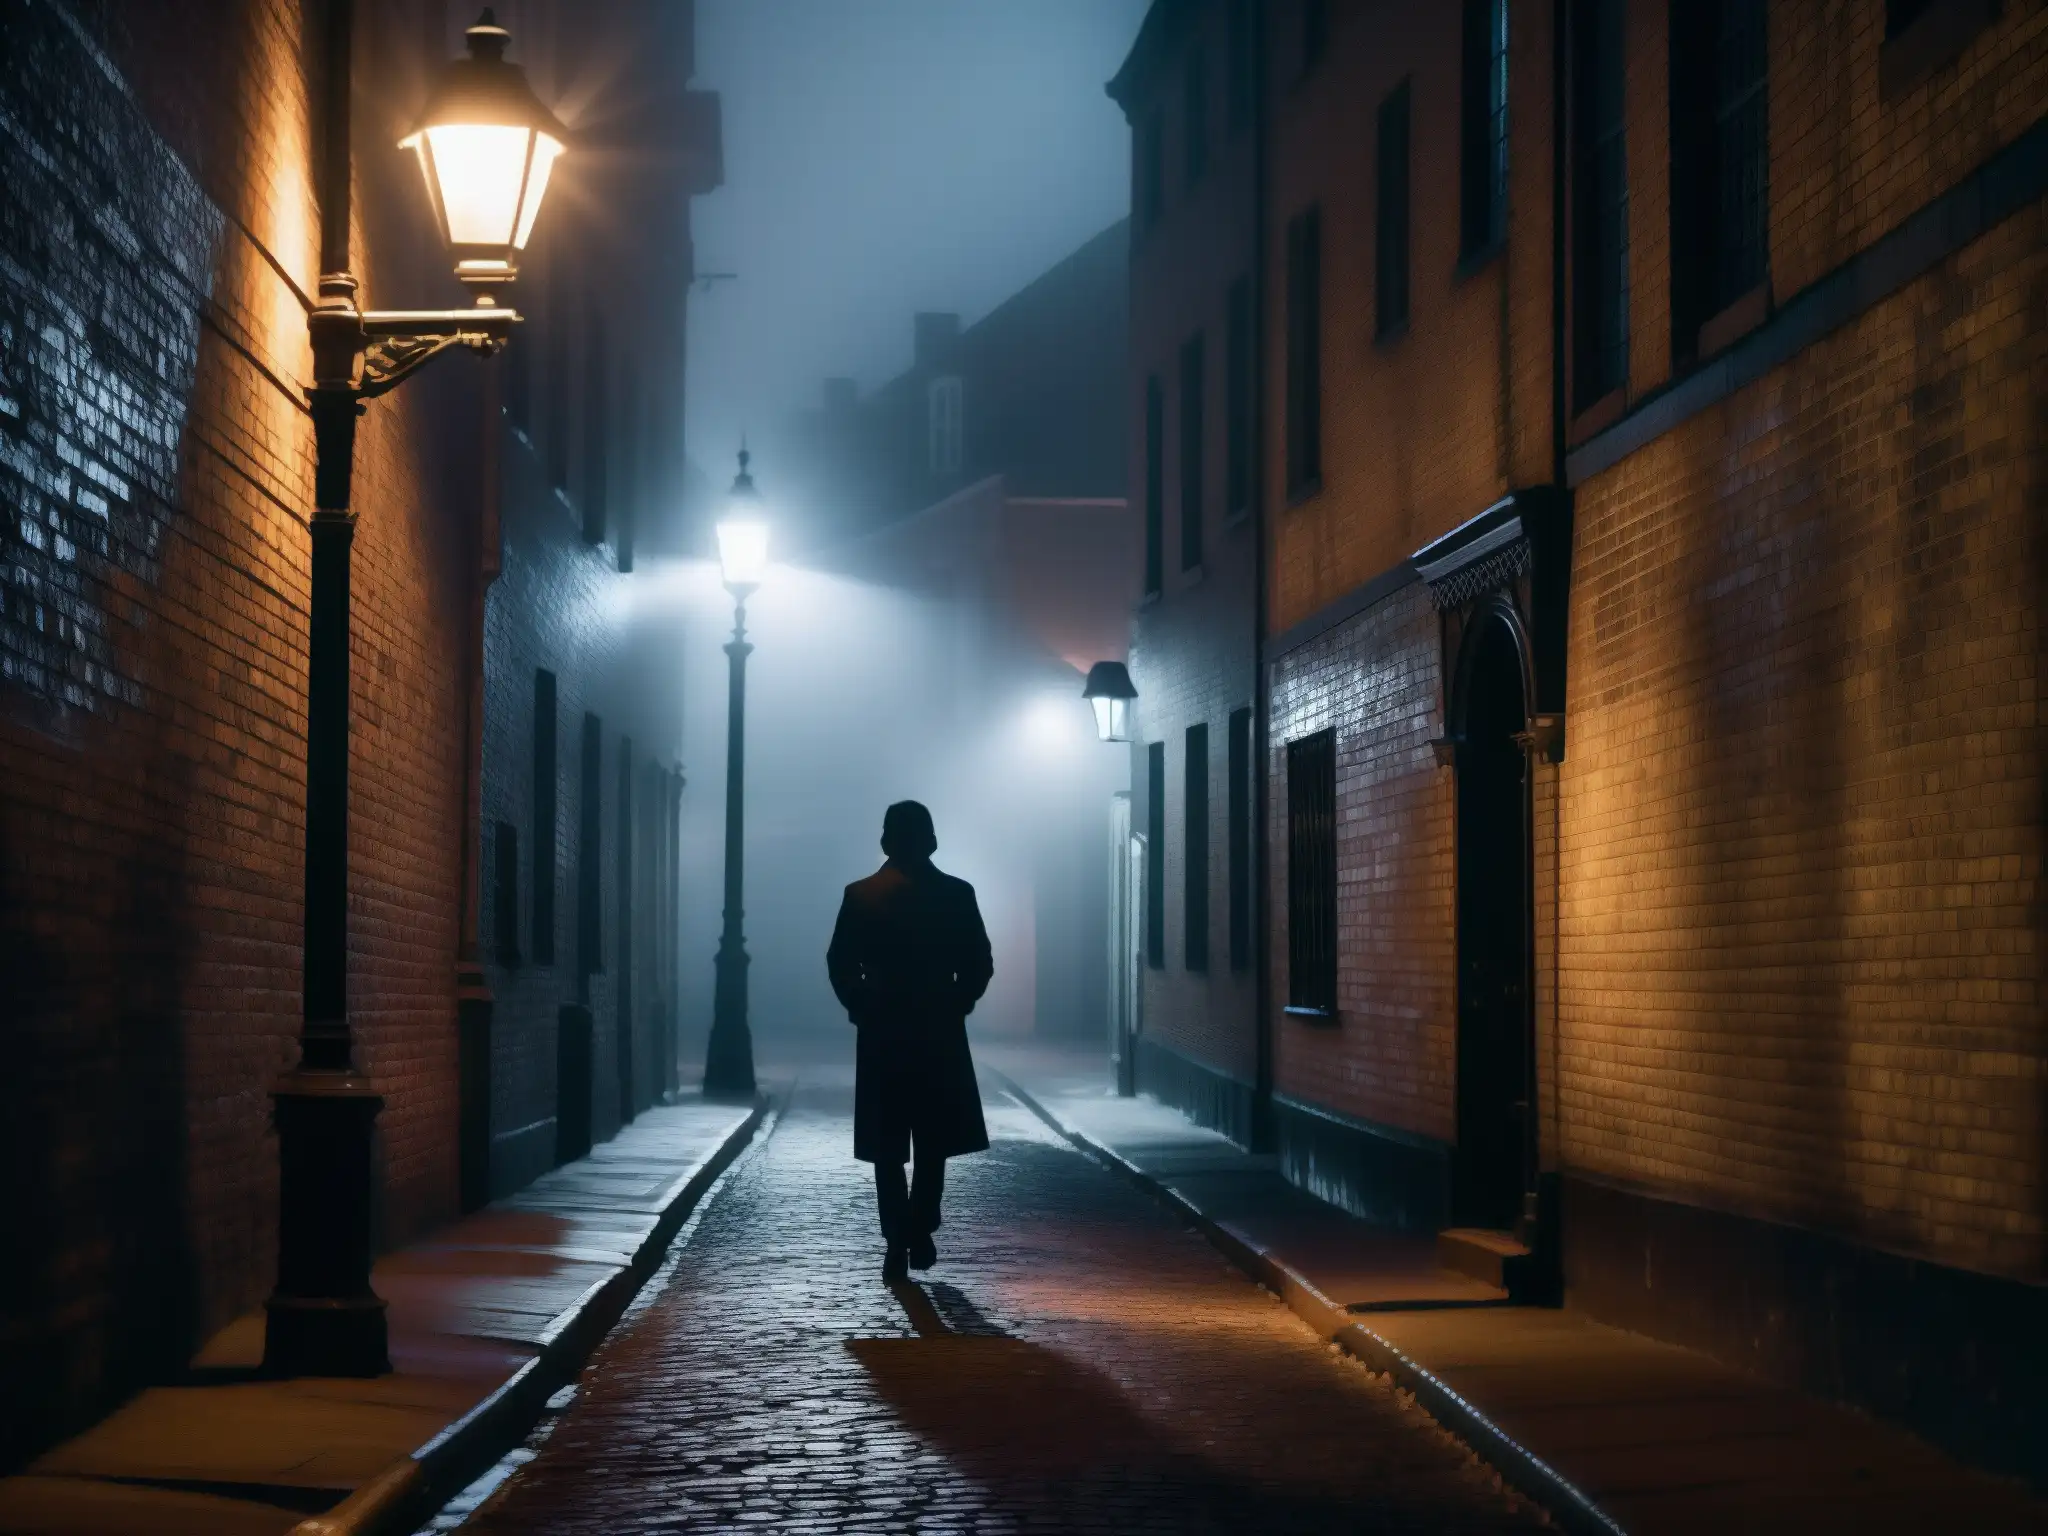 Una misteriosa figura se recorta en la neblina de una calle urbana, bajo una tenue luz